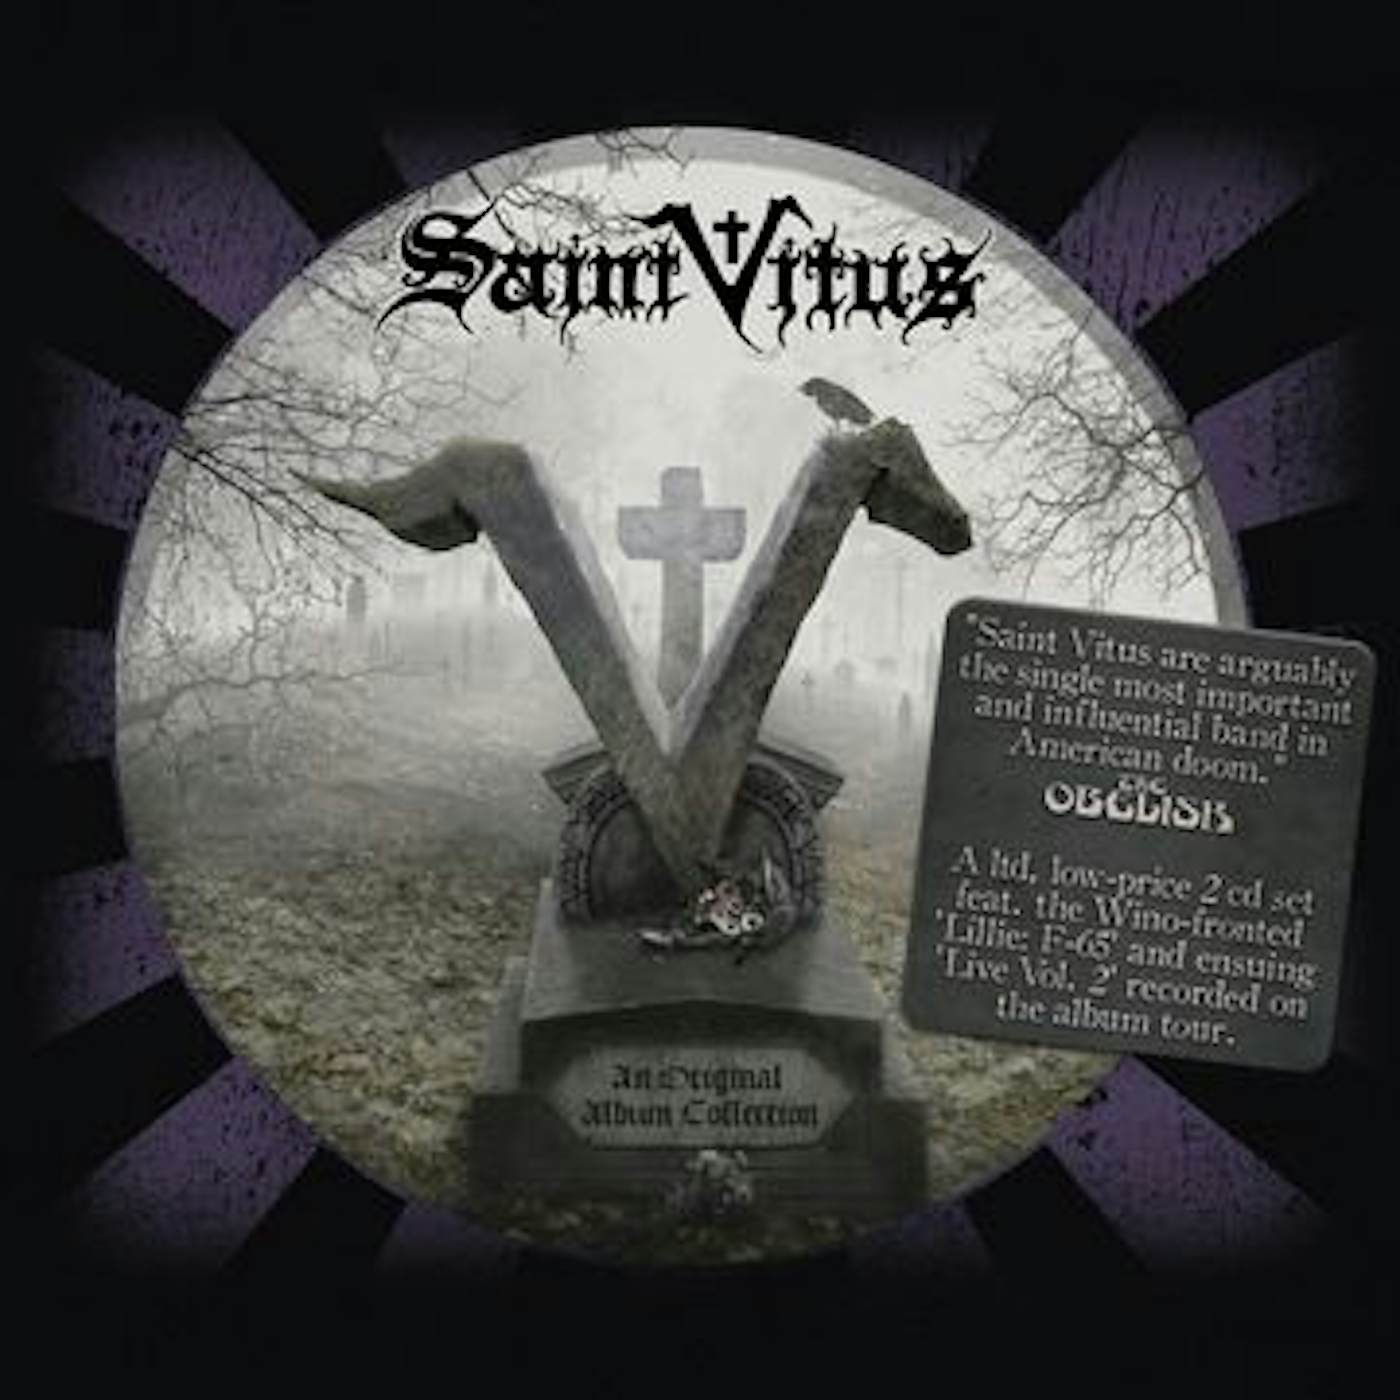 Saint Vitus AN ORIGINAL ALBUM COLLECTION: LILLIE: F-65 + LIVE CD